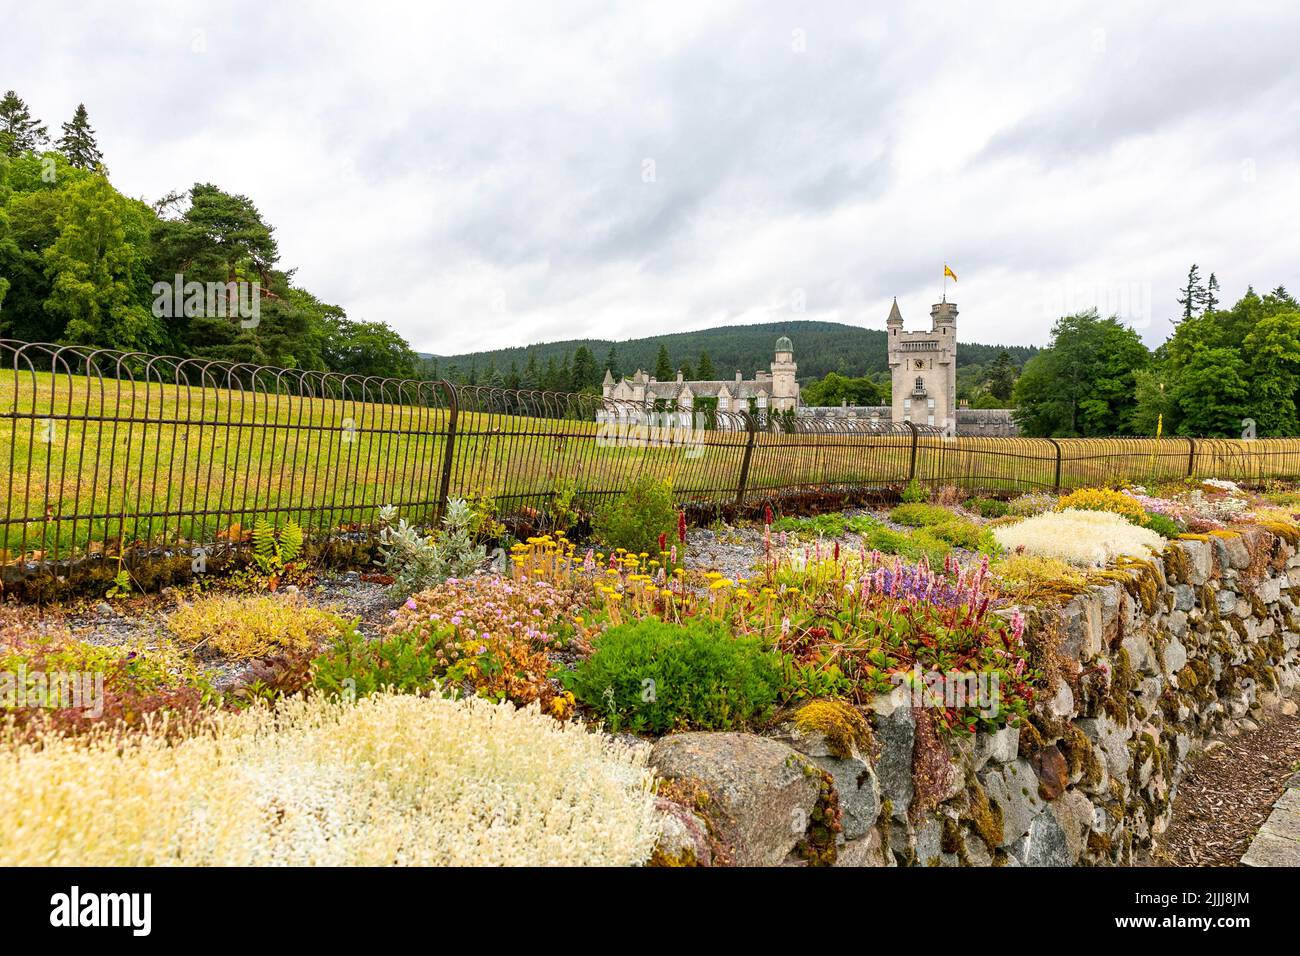 Balmoral Castle, residencia privada de la familia real en Aberdeenshire, vista desde los jardines de la finca con flores en flor, día de verano, Escocia, Reino Unido Foto de stock